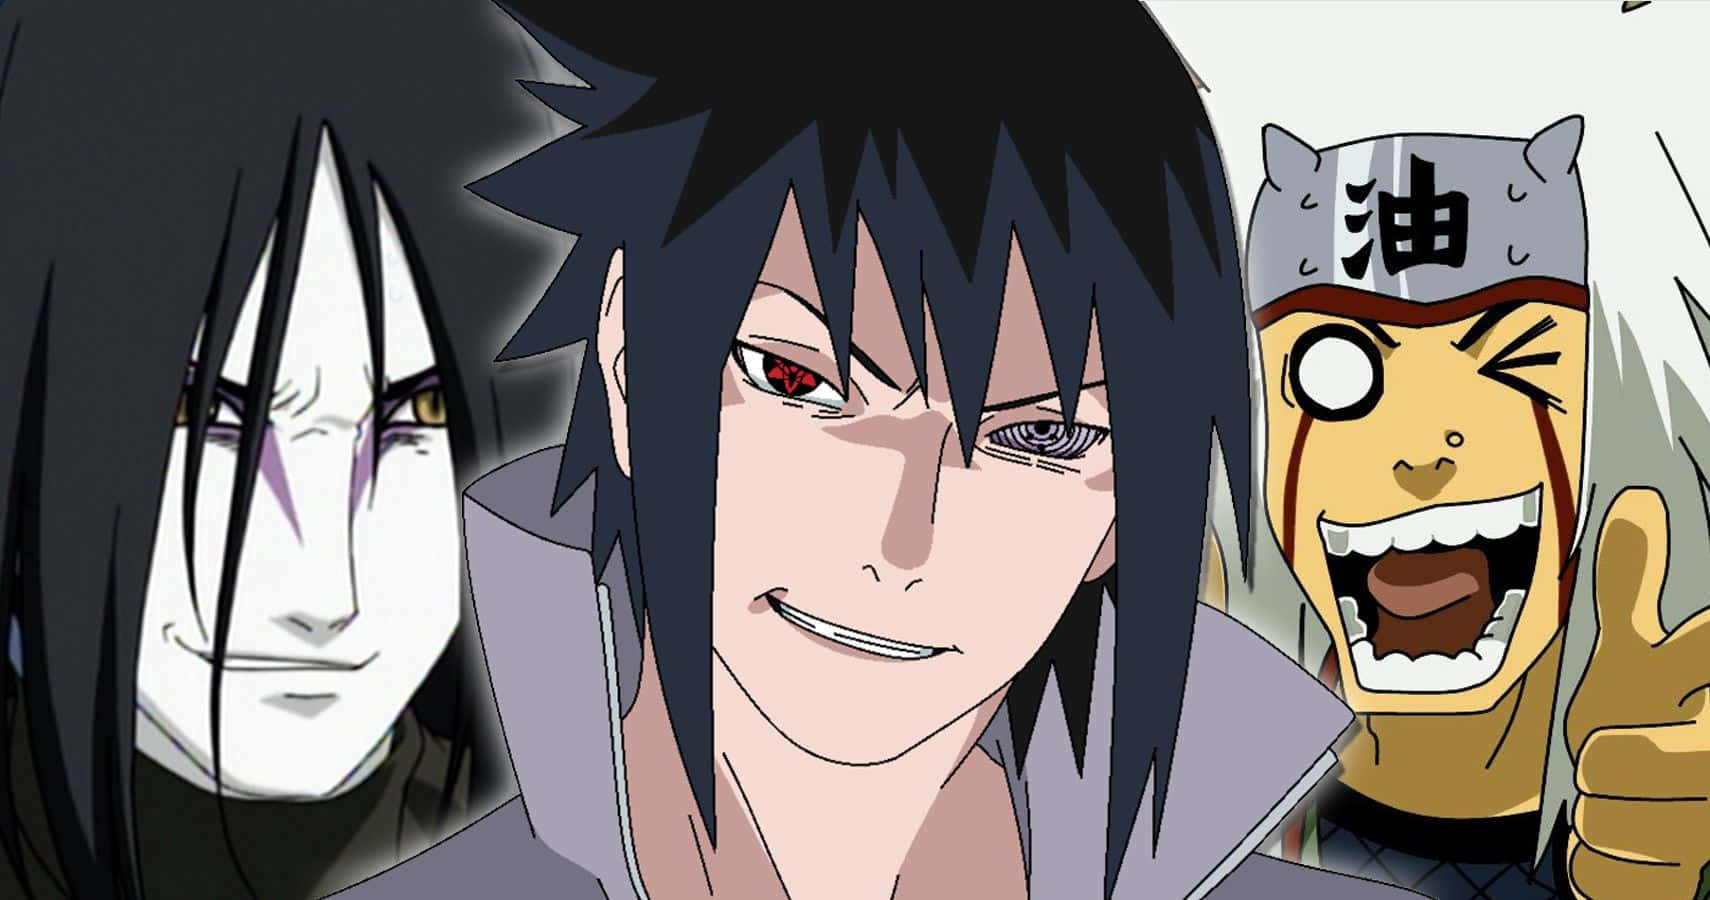 Duemigliori Amici, Naruto E Sasuke, Pronti Ad Affrontare Insieme Qualsiasi Sfida.